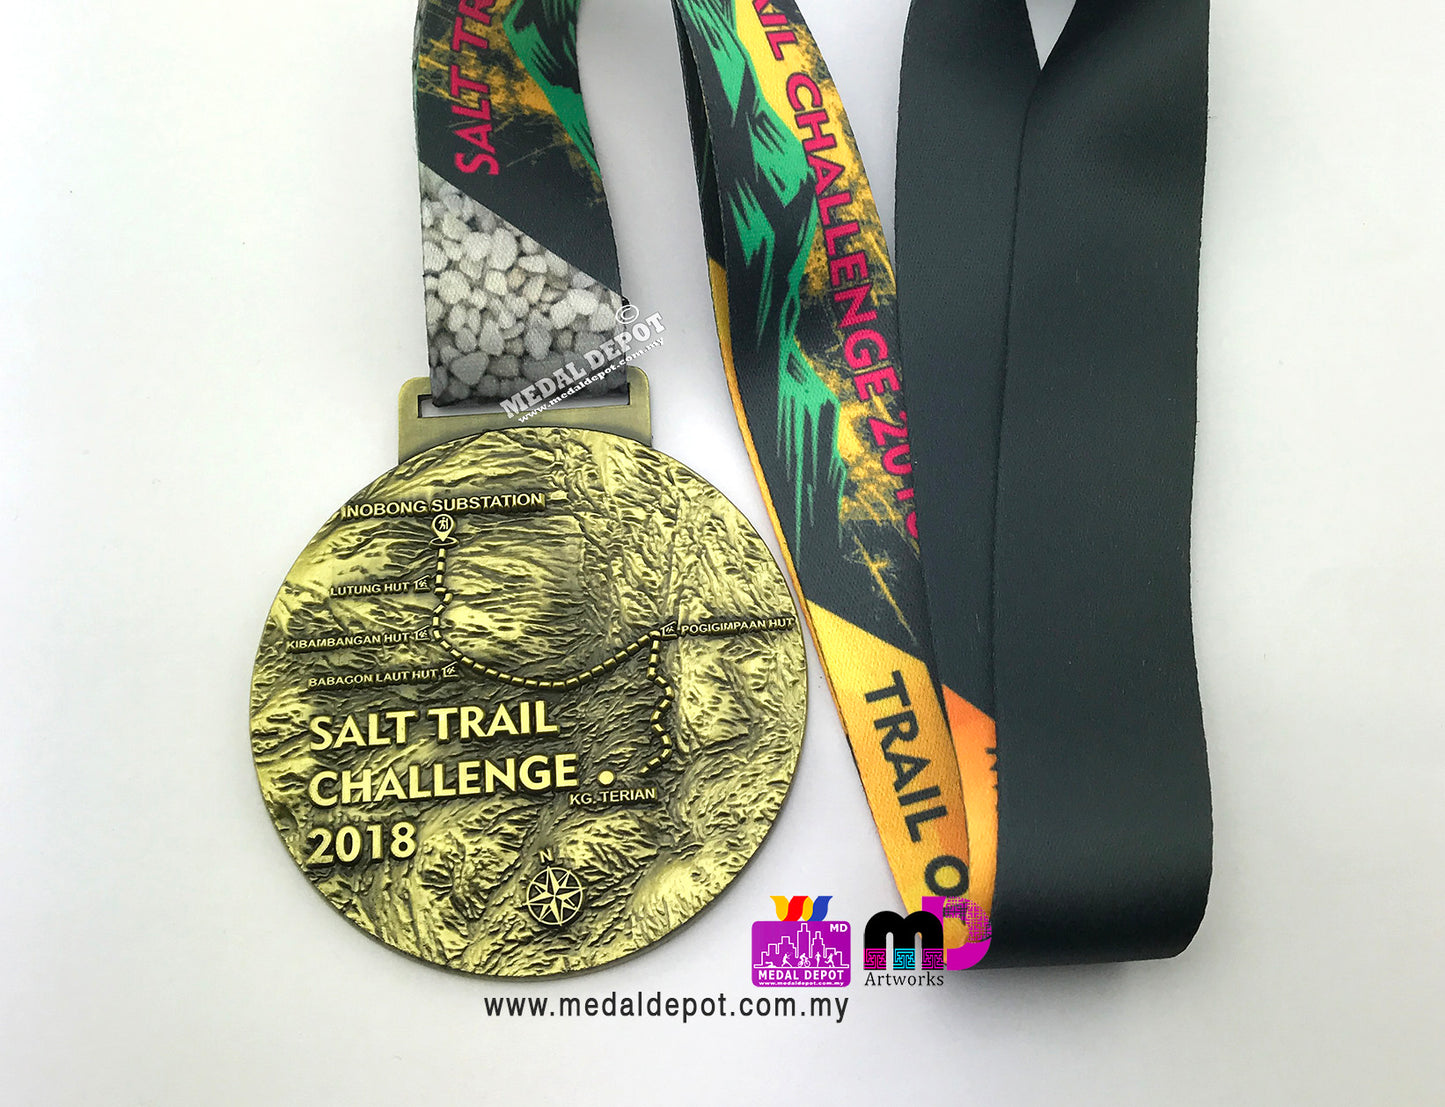 Salt Trail Challenge 2018